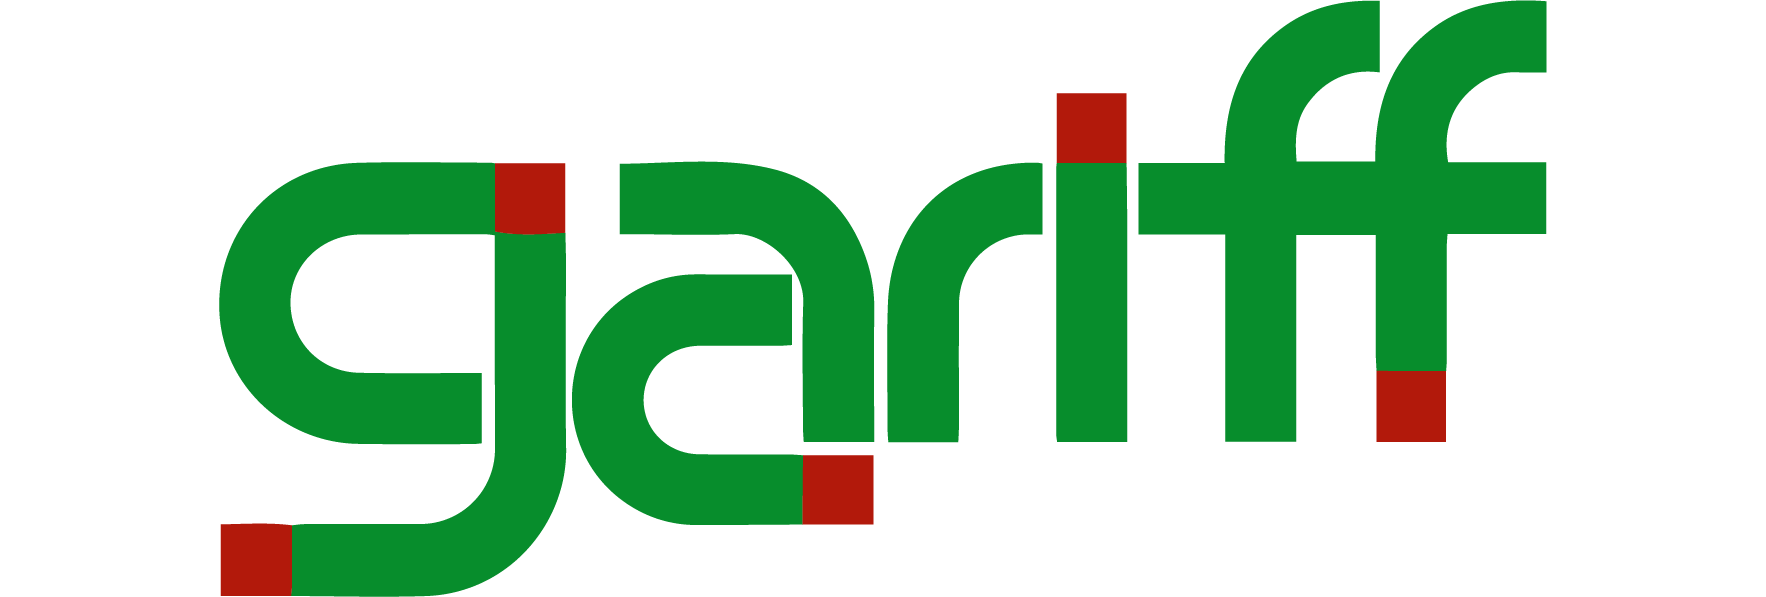 gariff logo-01-01.png